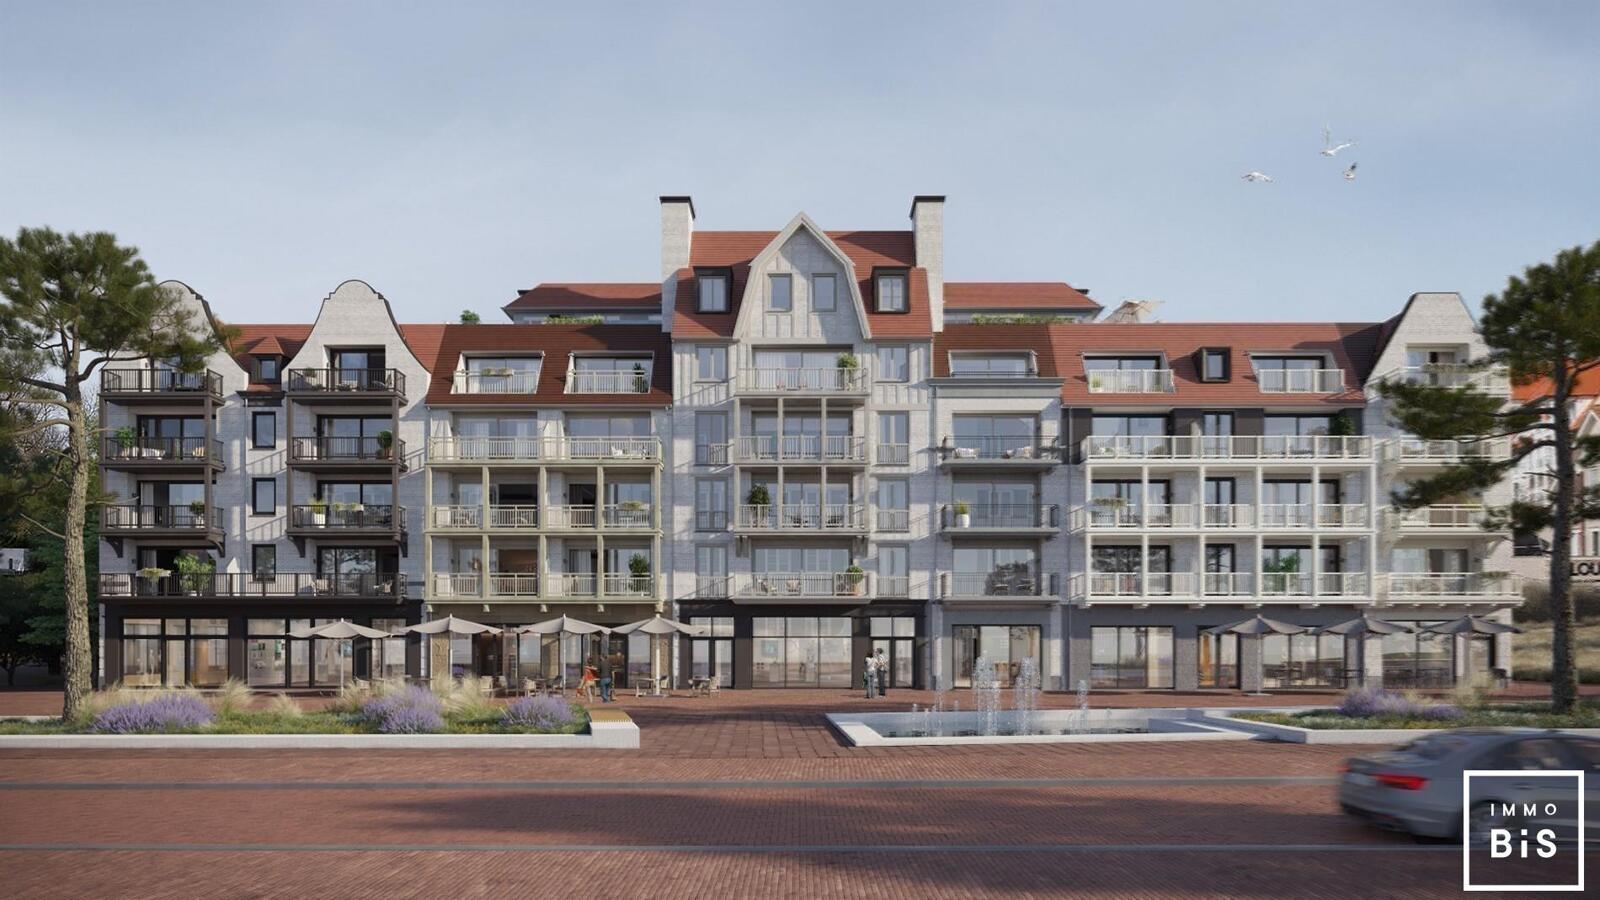 " Appartement villa moderne avec terrasse sur la Digue à Cadzand - Résidence Duinhof-Noord " 8